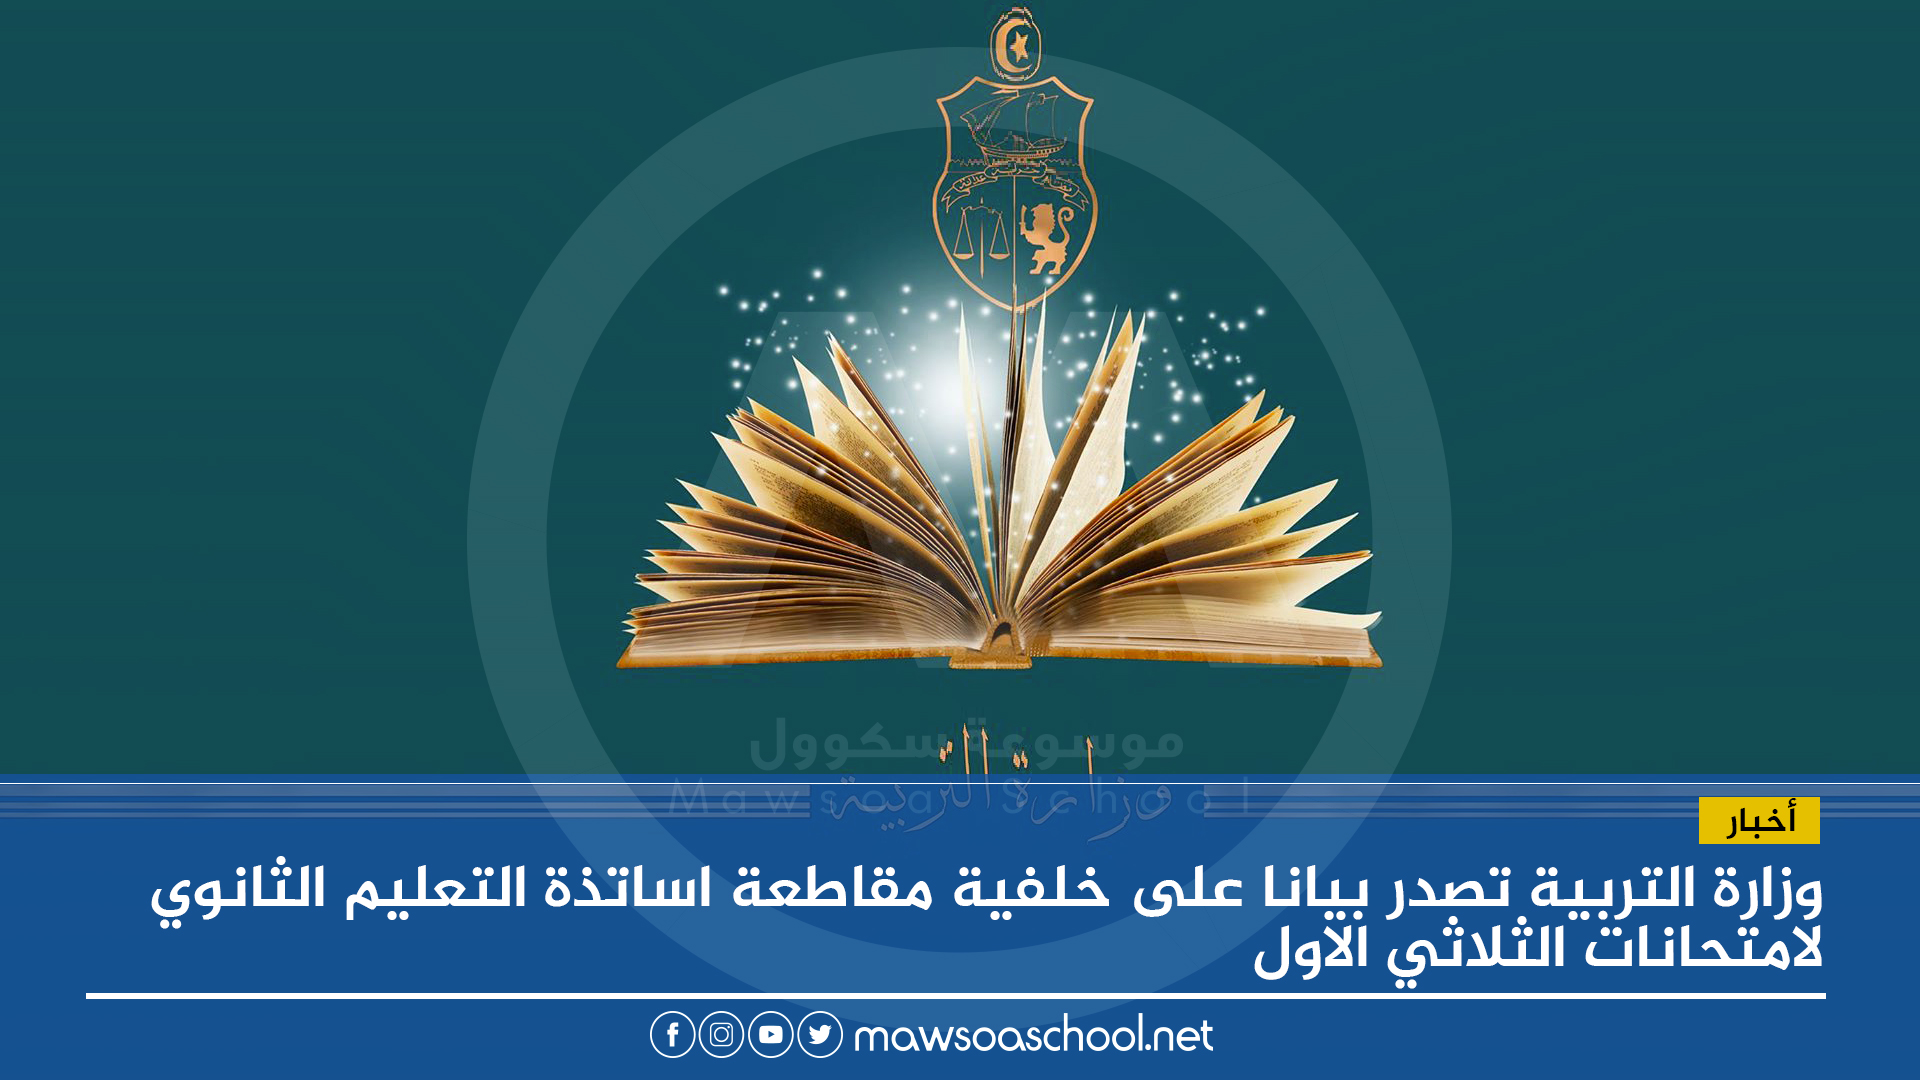 وزارة التربية تصدر بيانا على خلفية مقاطعة اساتذة التعليم الثانوي لامتحانات الثلاثي الاول